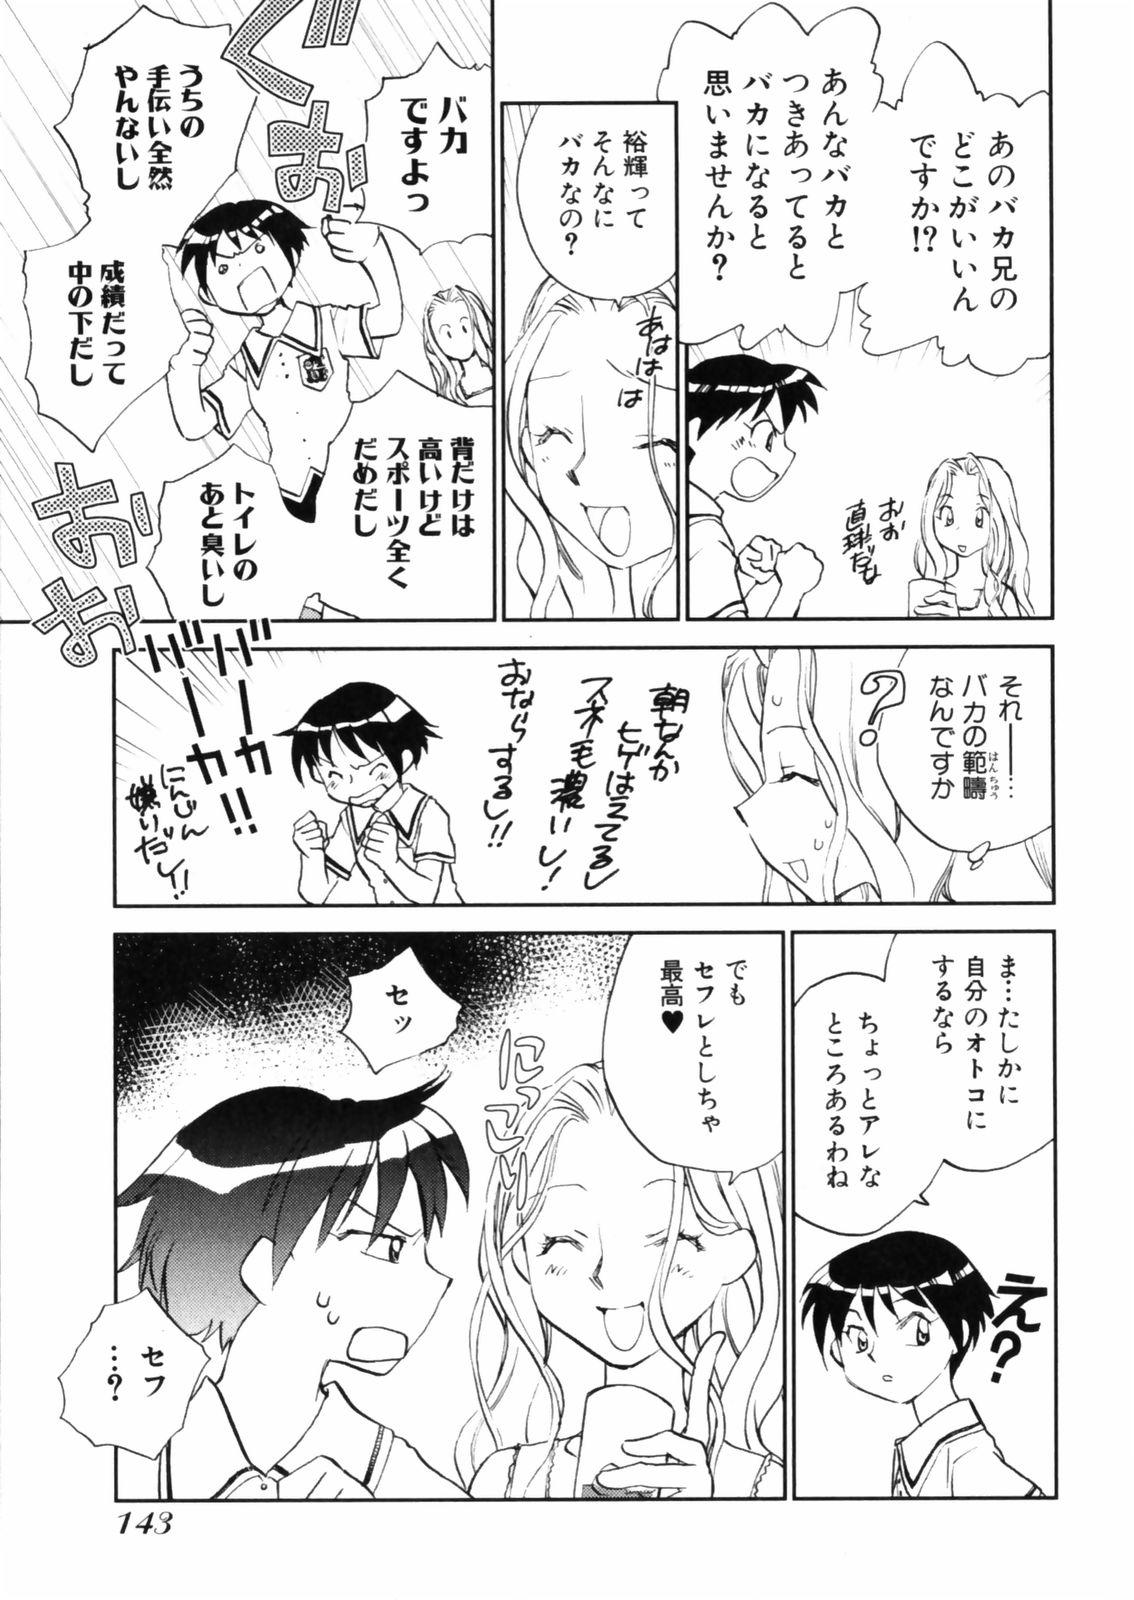 [Okano Ahiru] Hanasake ! Otome Juku (Otome Private Tutoring School) Vol.2 144